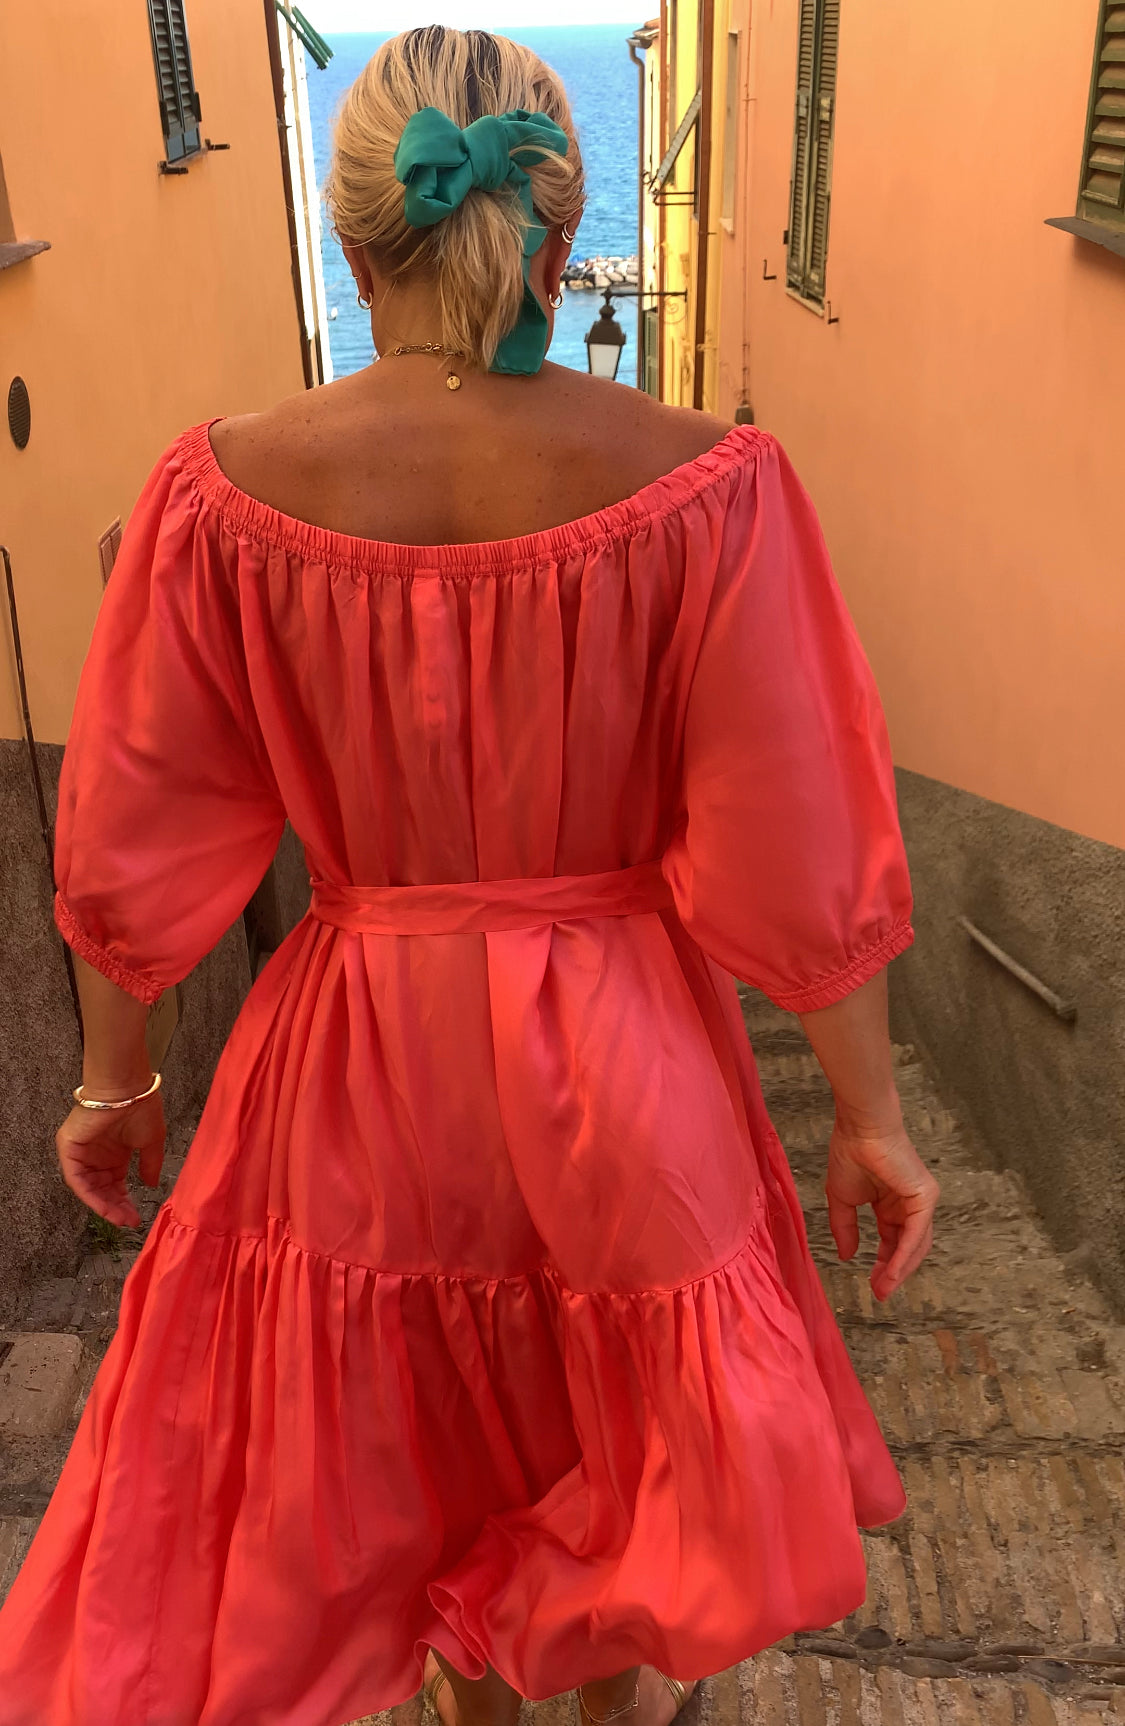 Woman in Ausus maxi dress spritz orange in Liguria Italy